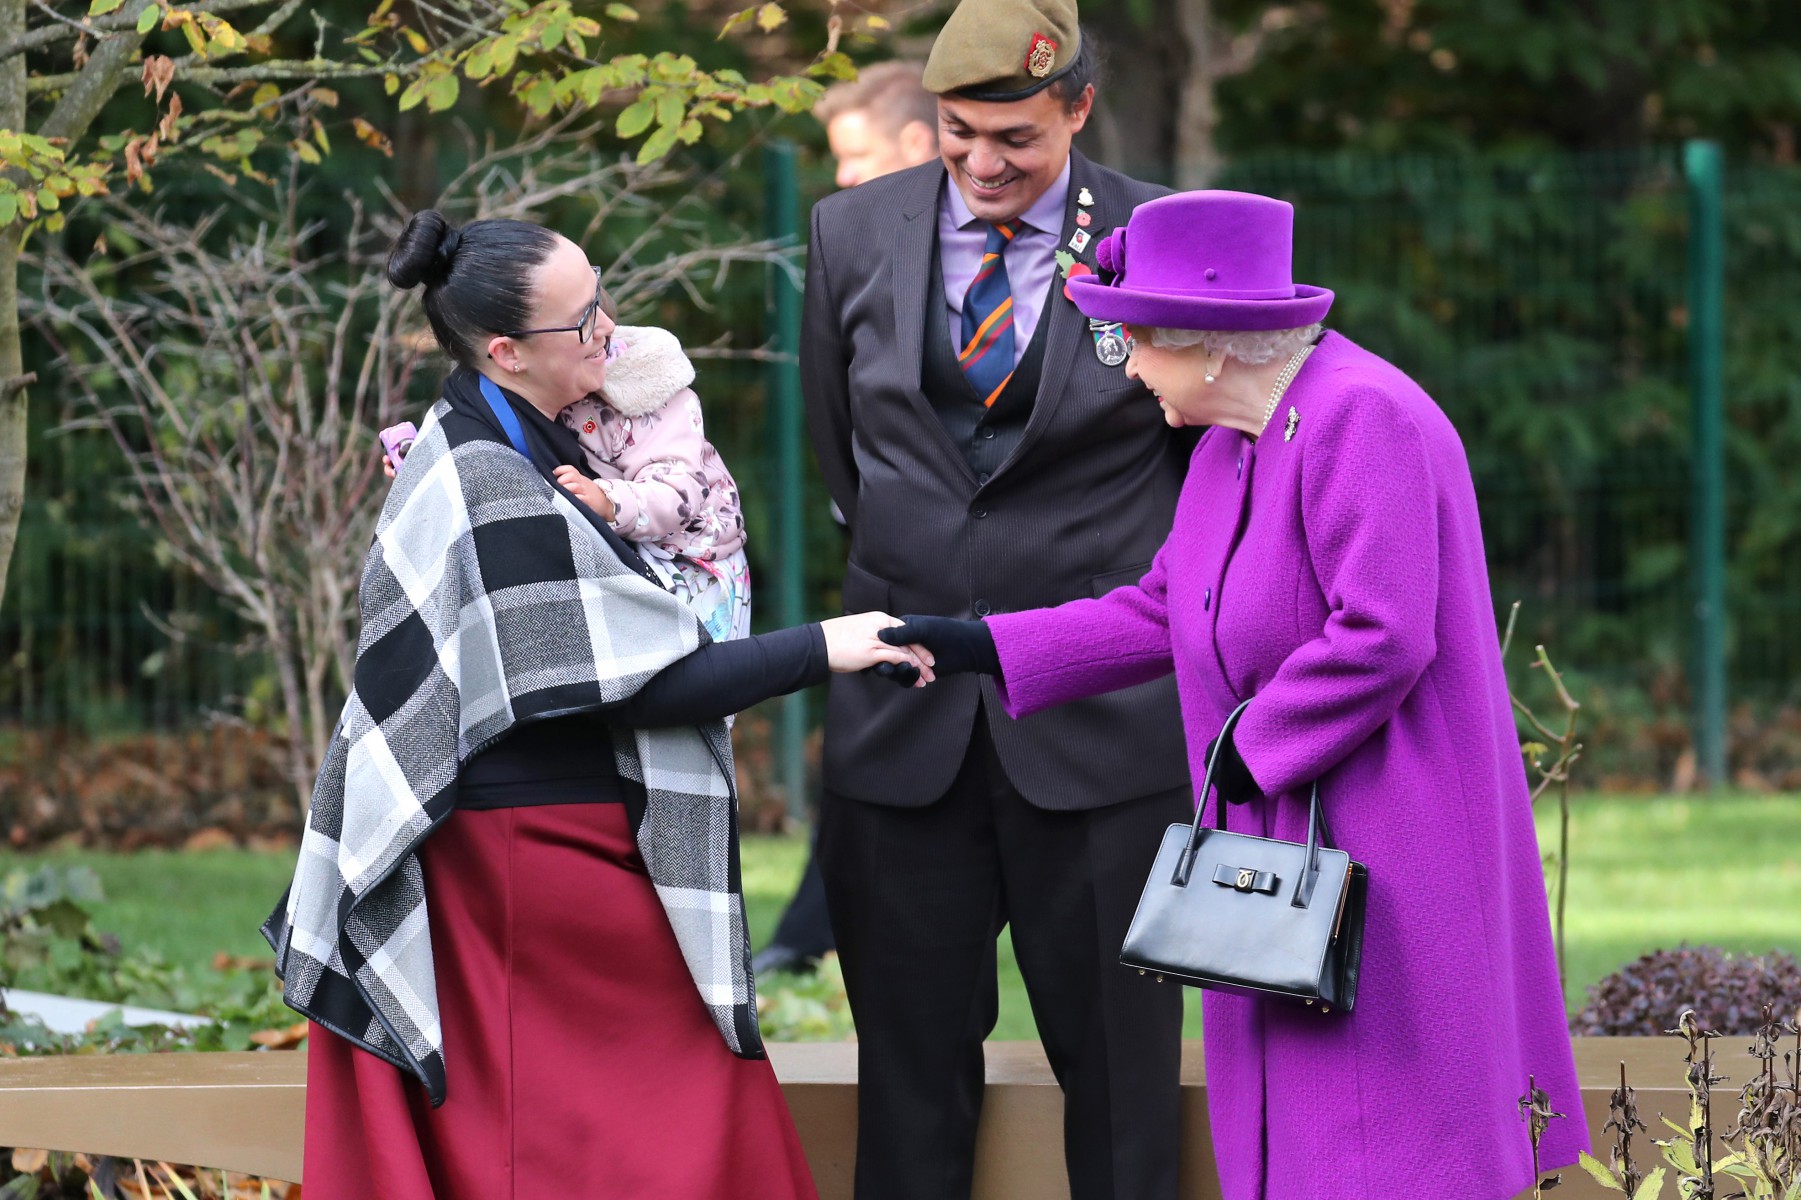 The Queen beams as she meets a veteran's family